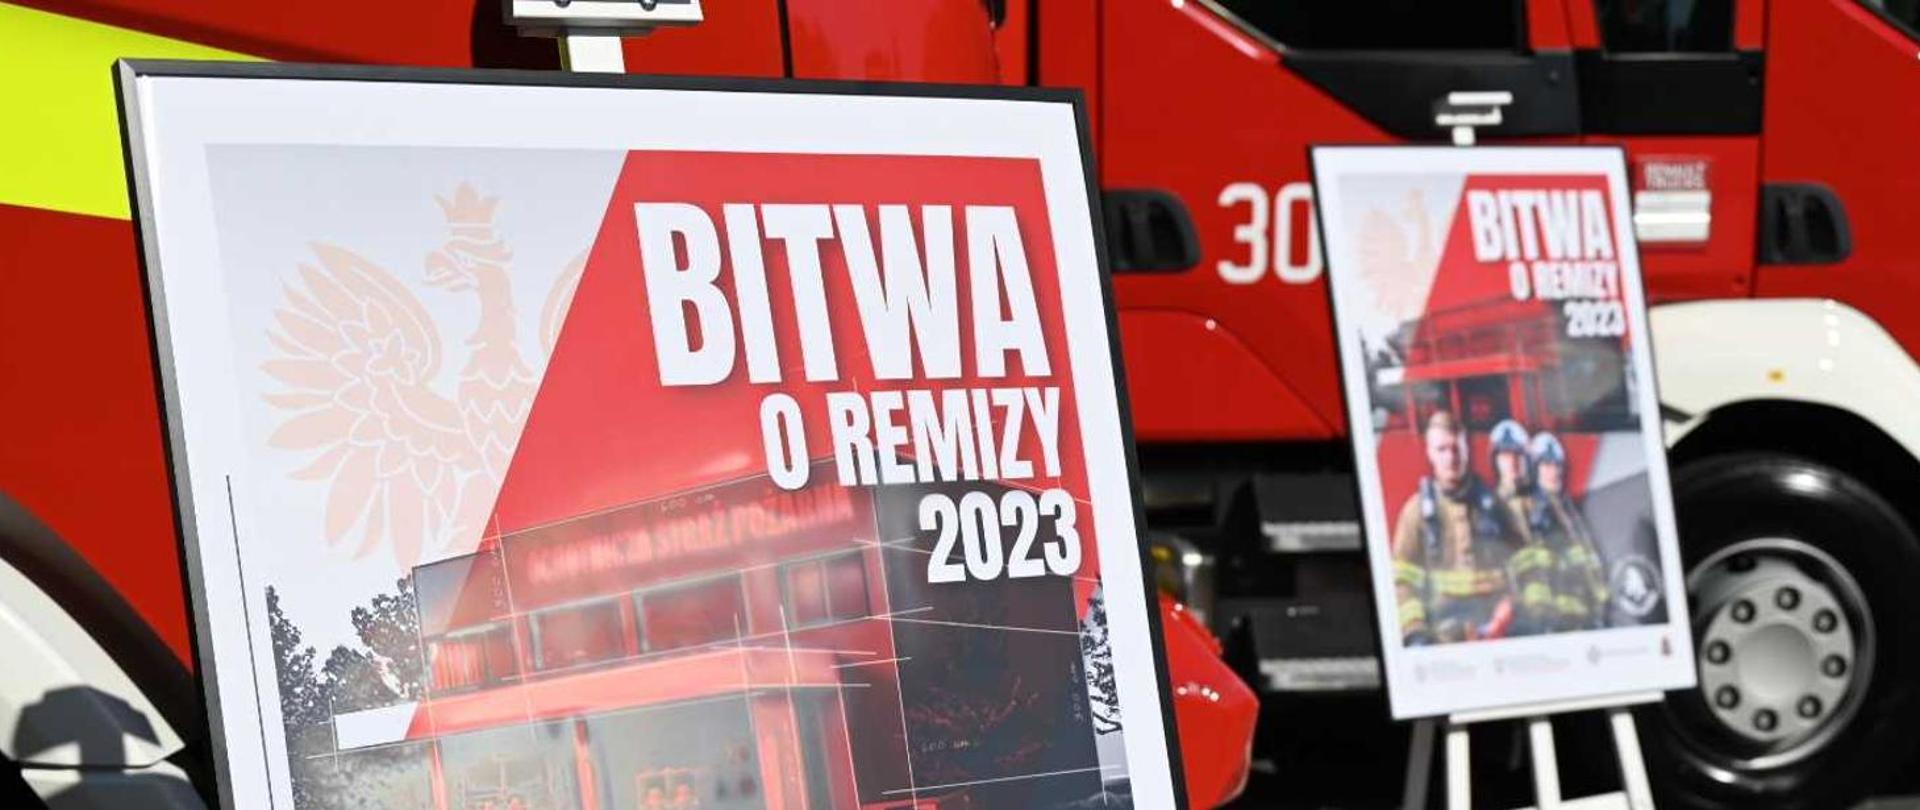 Na tle samochodu wozu straży pożarnej widac dwa plakaty promujące akcję "Bitwa o Remizy 2023".